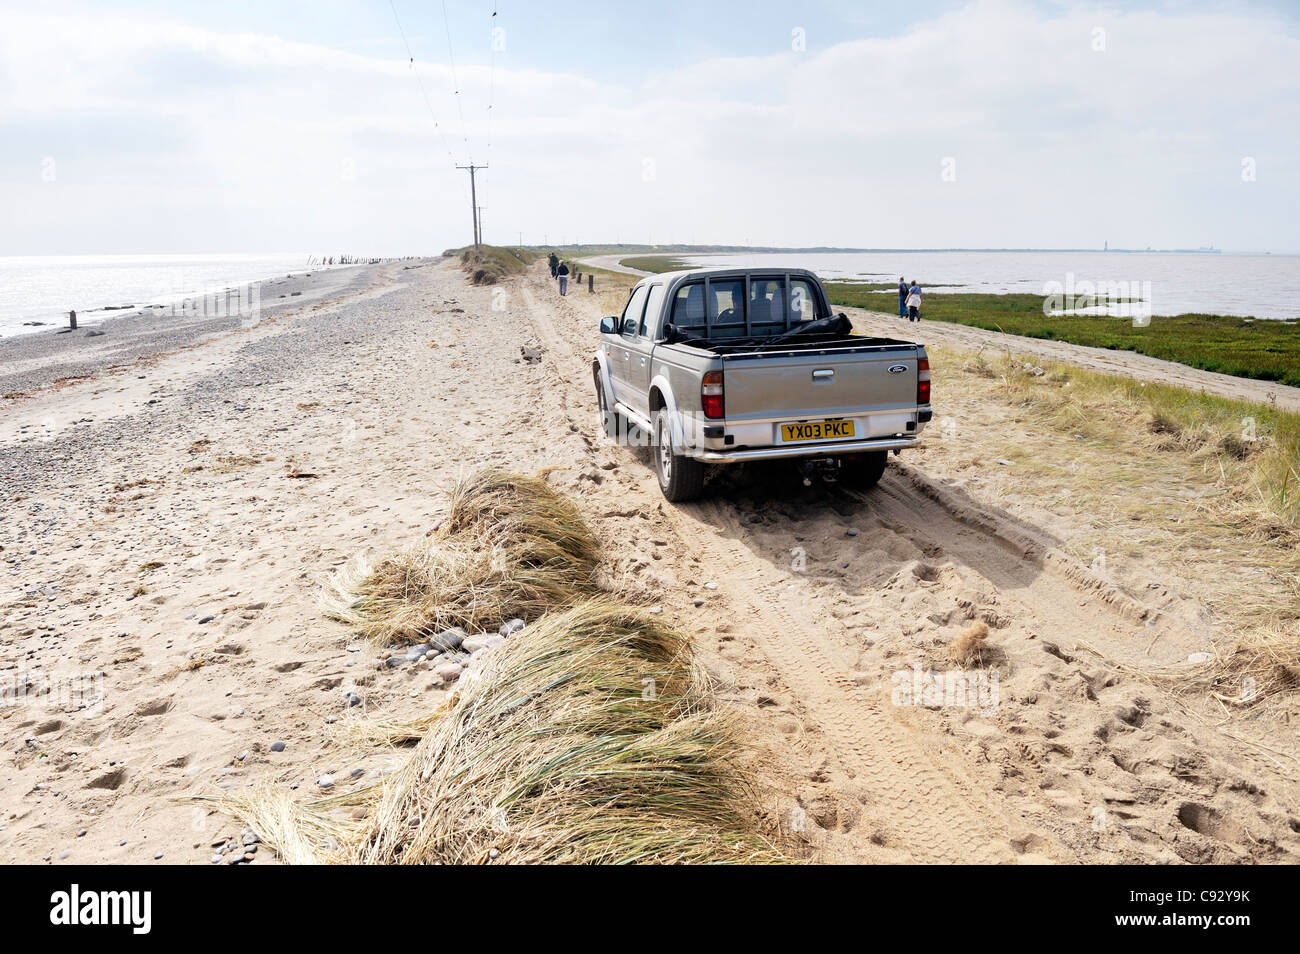 Meer Sturm Küstenerosion an verschmähen Spitze, Yorkshire Ostküste England. 4-Rad Antrieb Auto auf beschädigte schmalsten Sand spucken Stockfoto